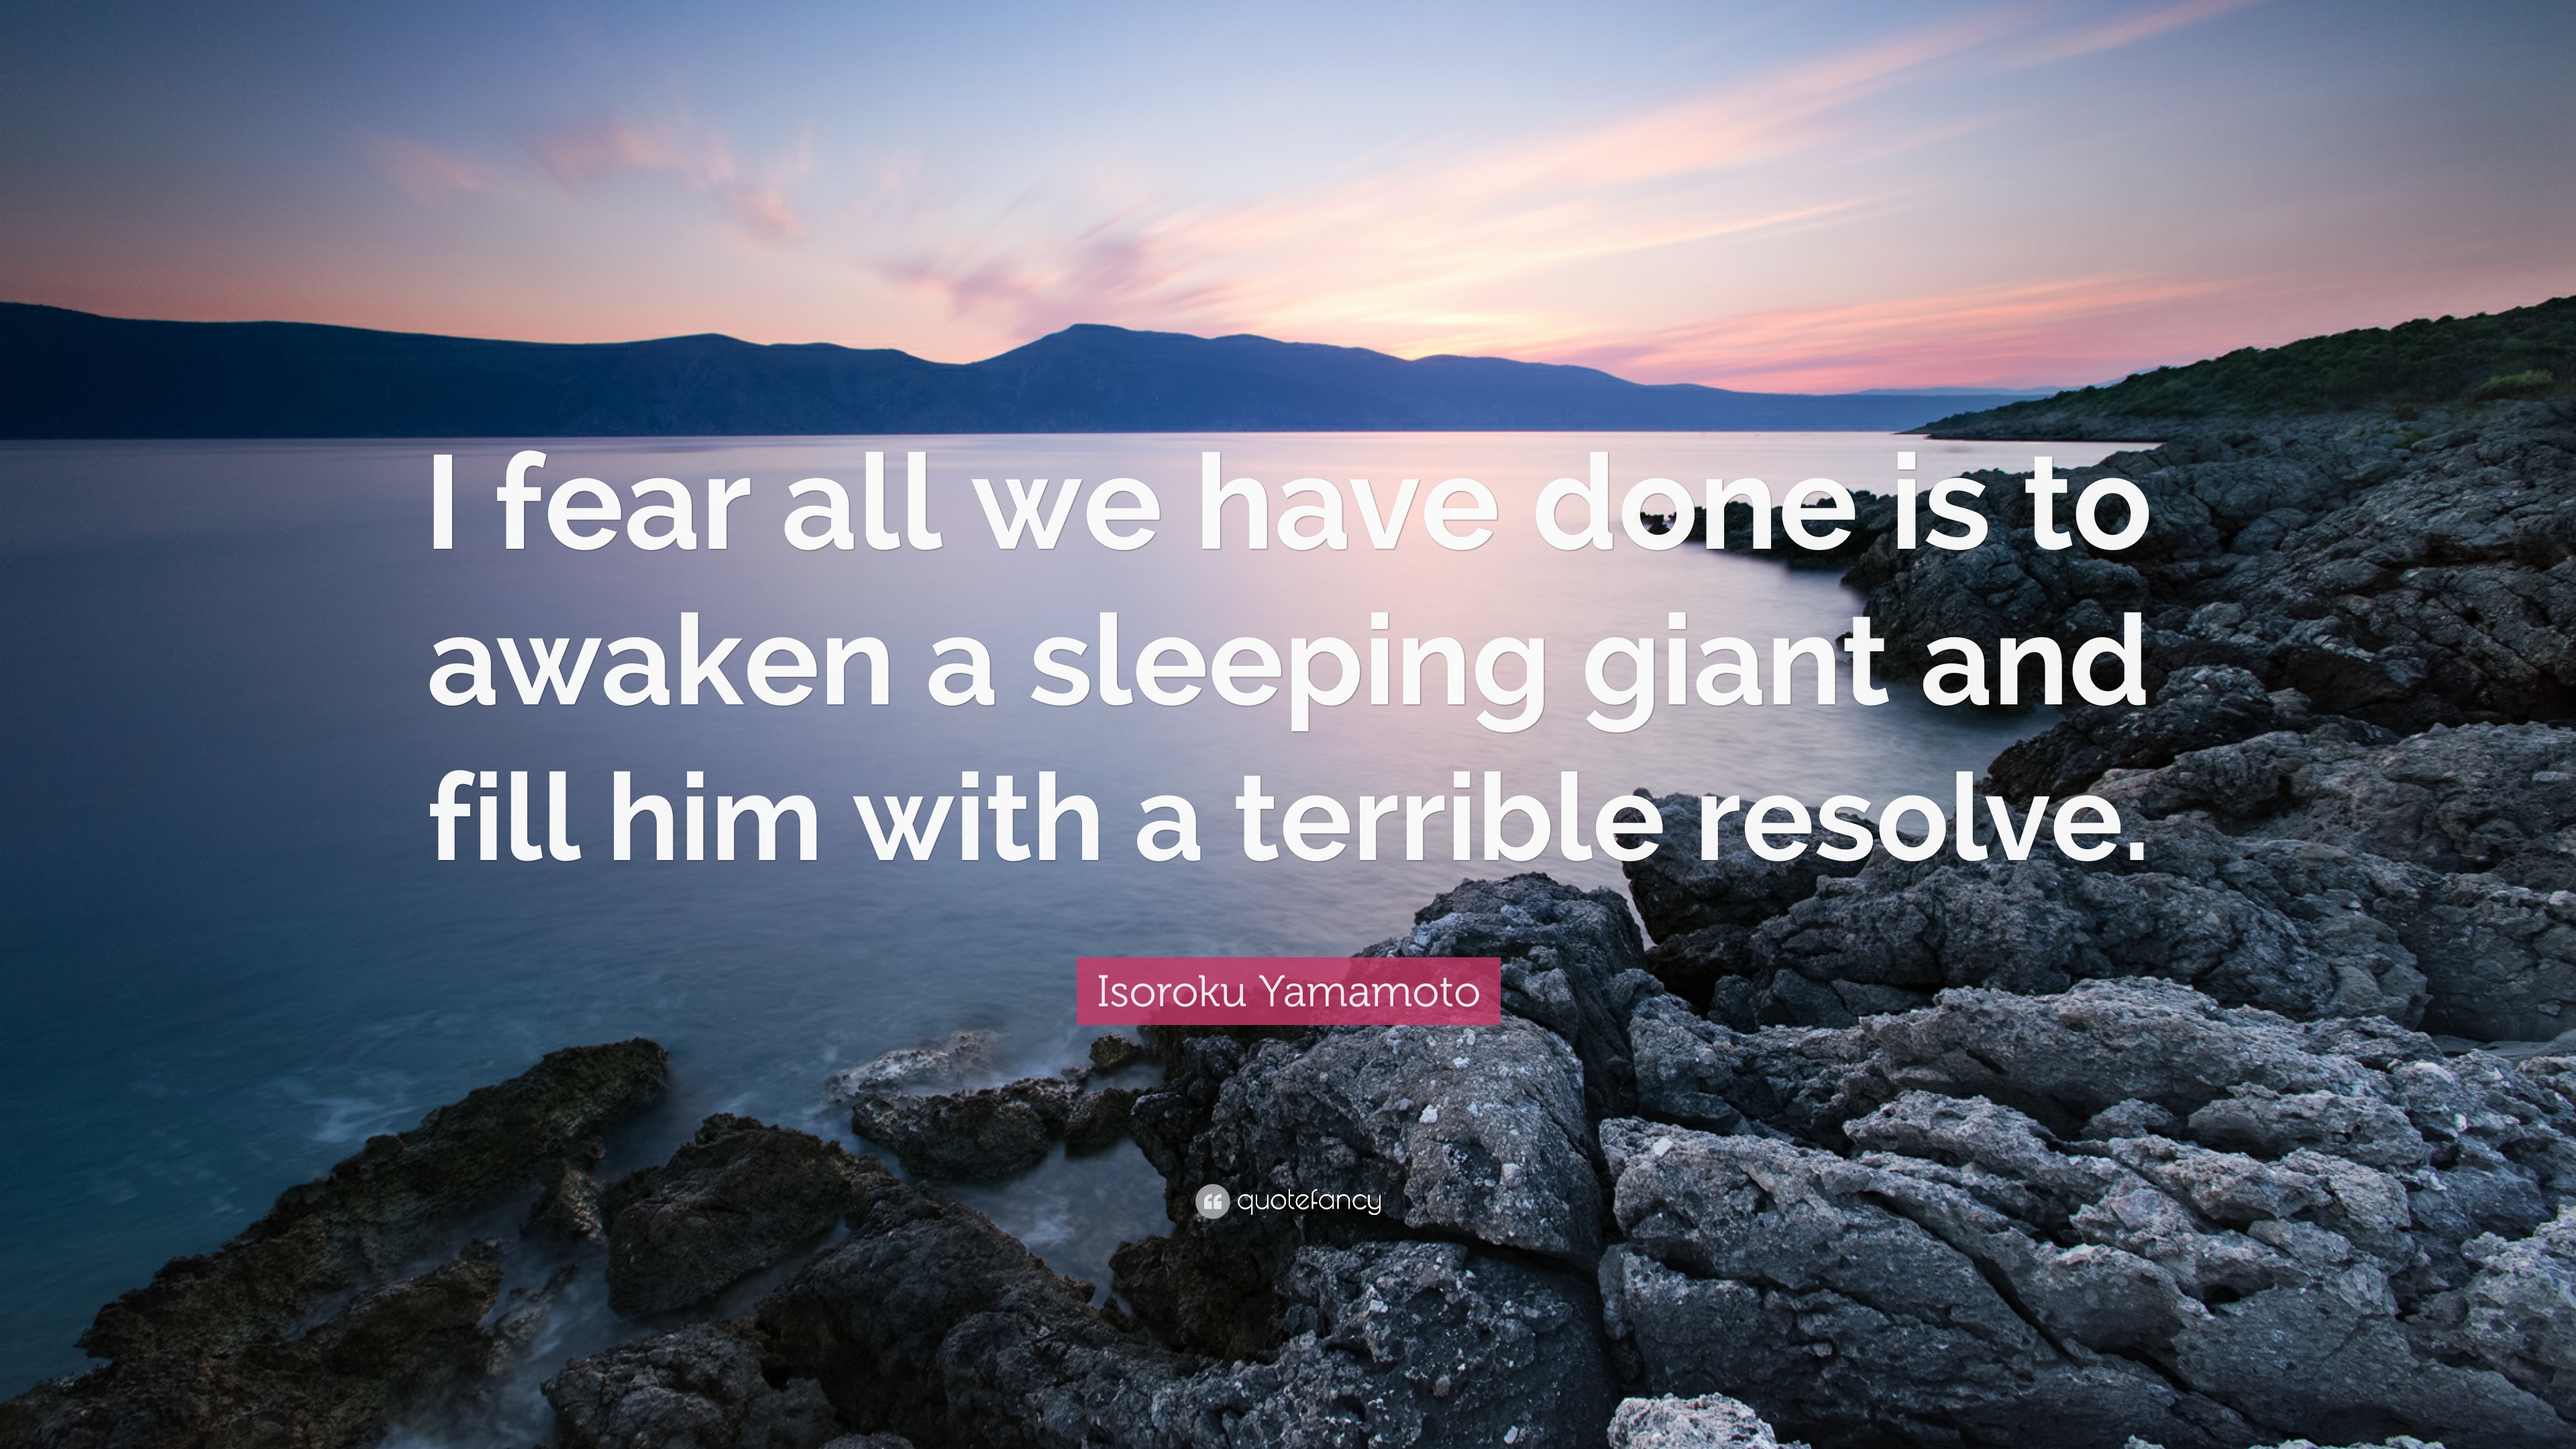 awaken a sleeping giant